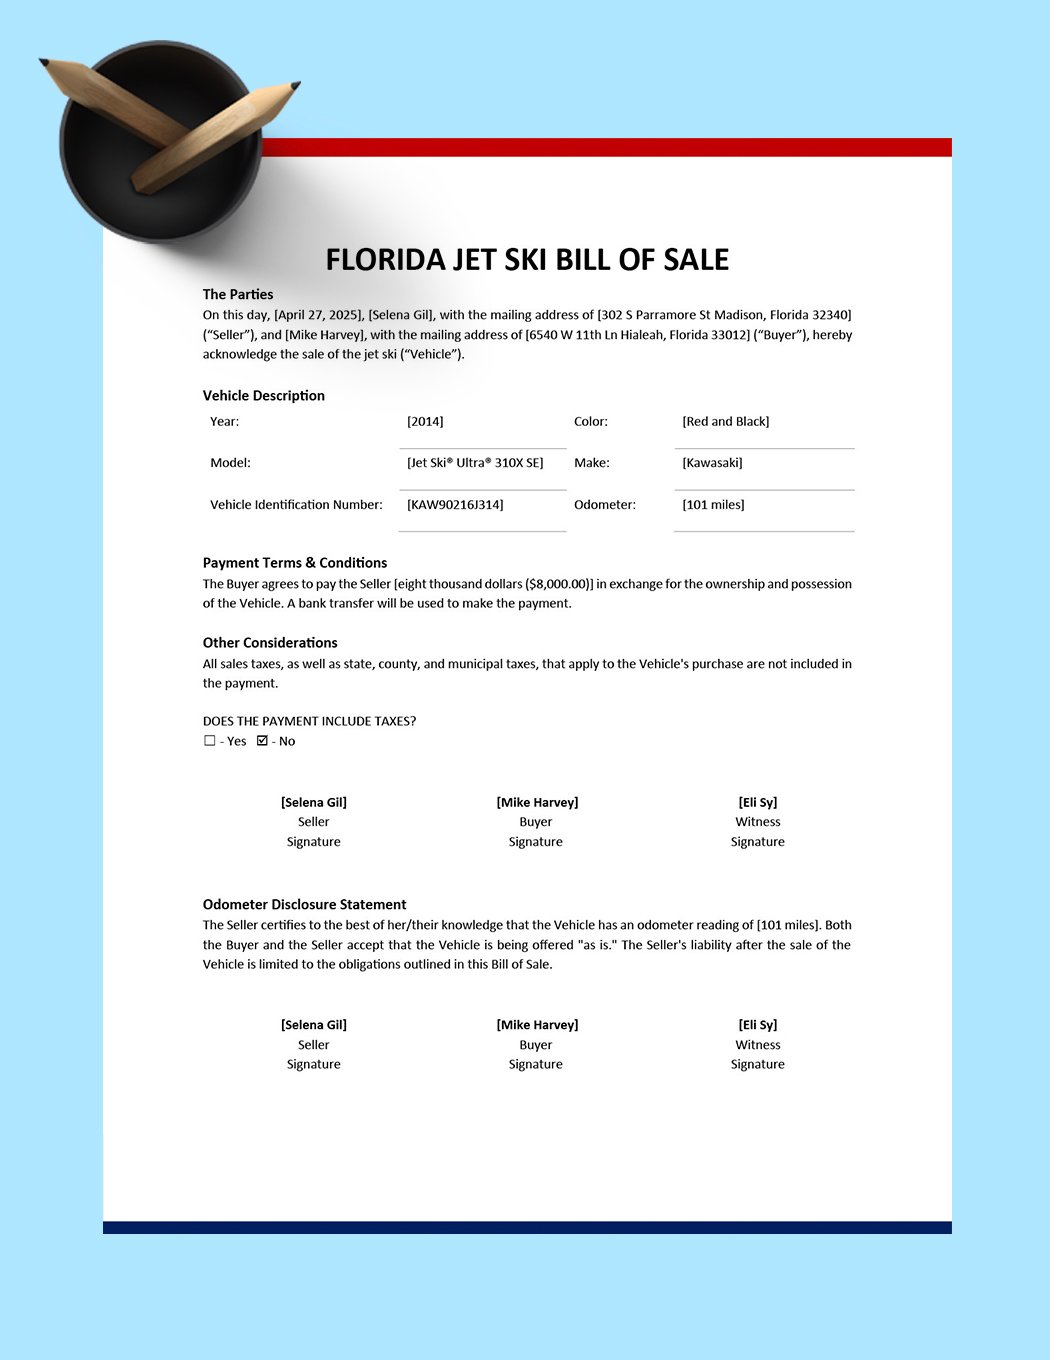 Florida Jet Ski Bill of Sale Template